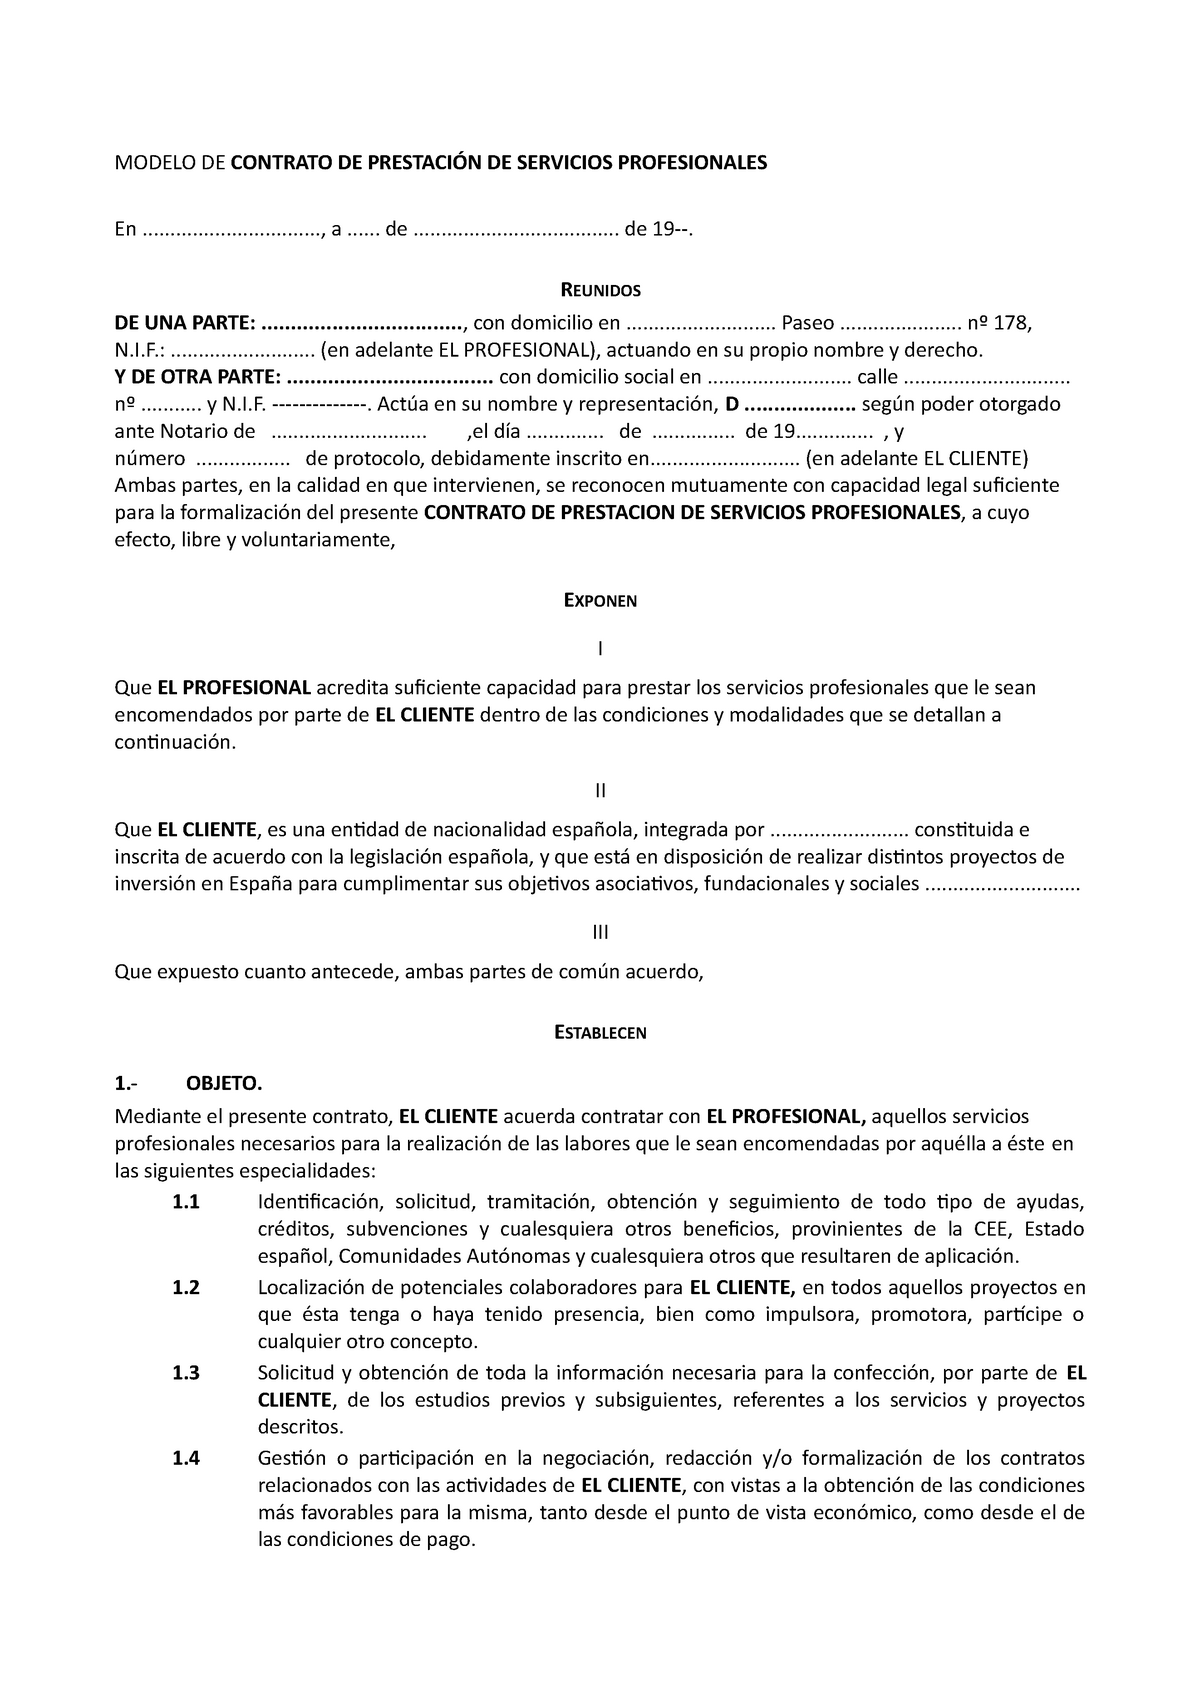 Modelo Contrato De Prestacion De Servicios Profesionales Modelo De Contrato De PrestaciÓn De 4308